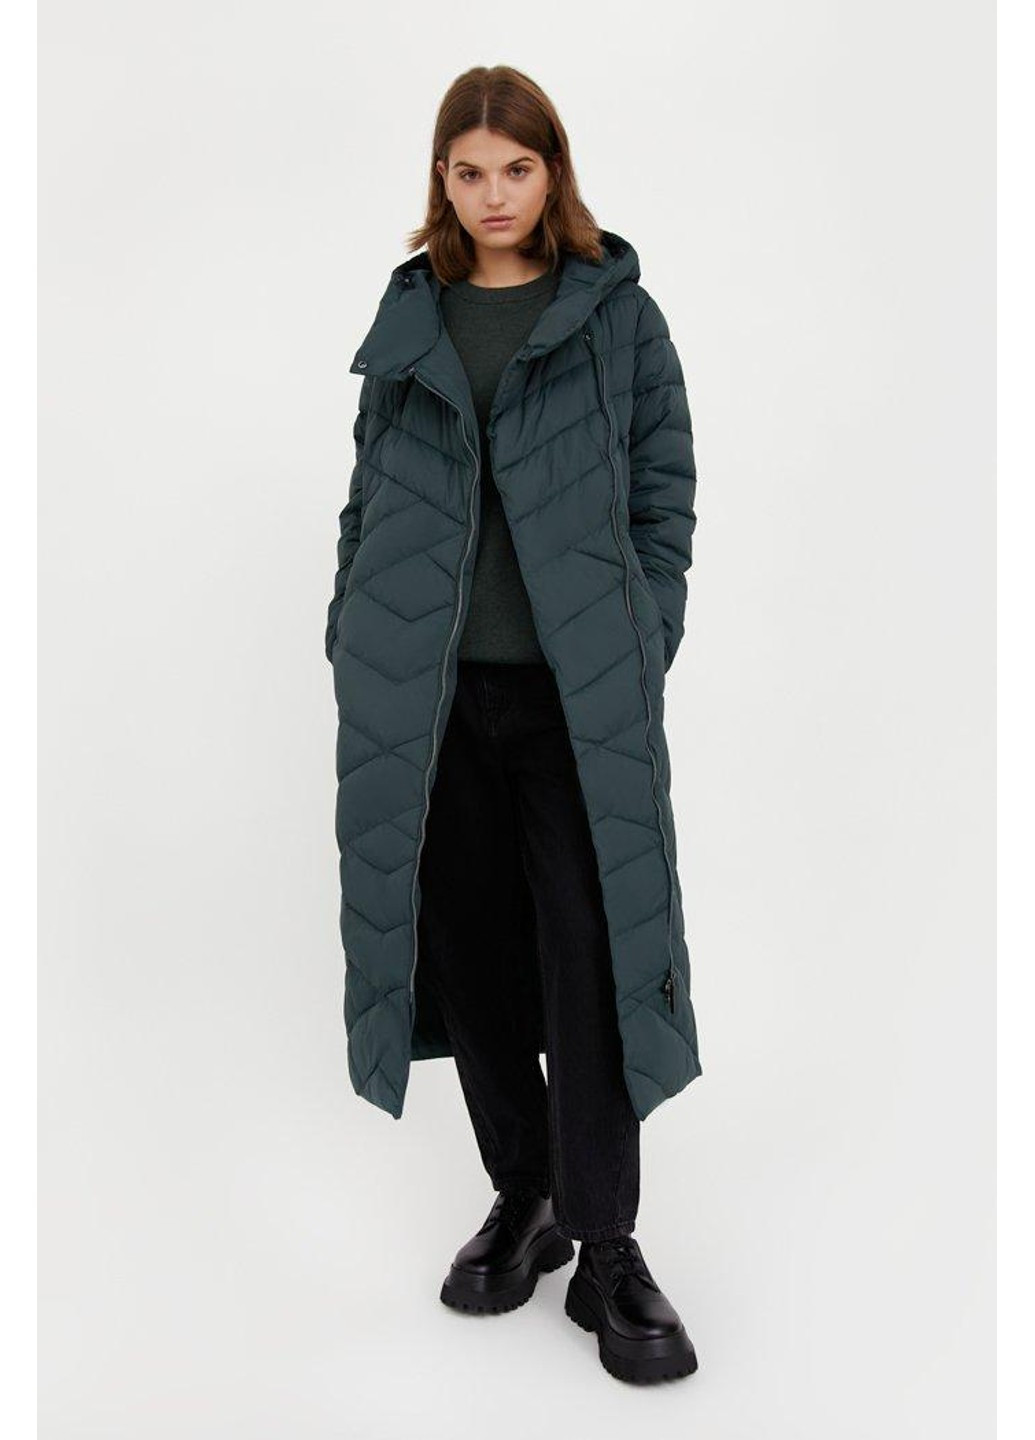 Зелена зимня зимова куртка va20-11009-506 Finn Flare